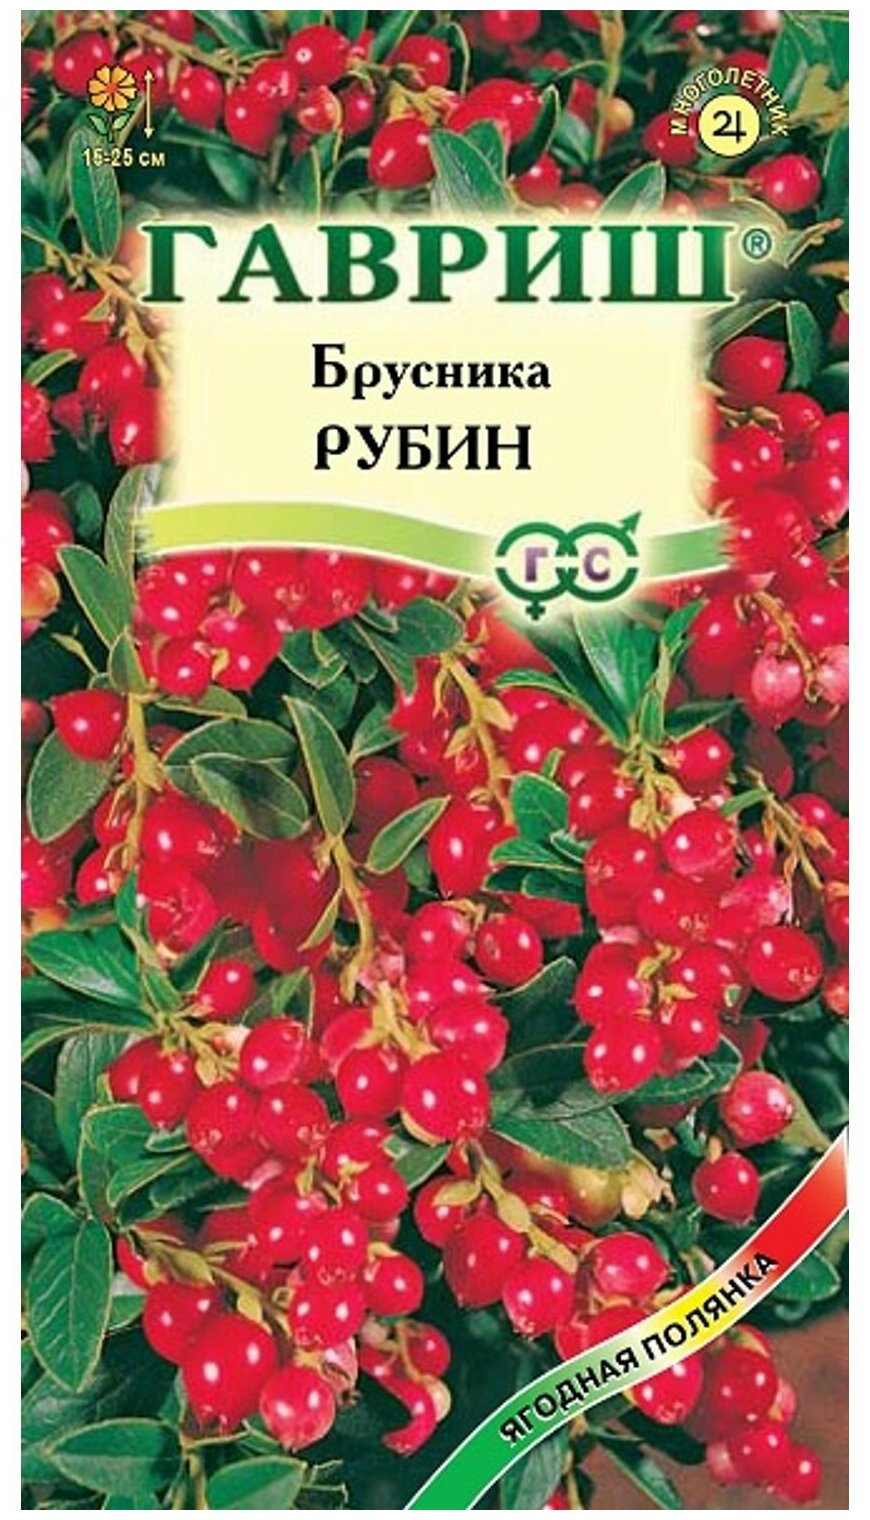 Семена Брусника Рубин 20 шт.